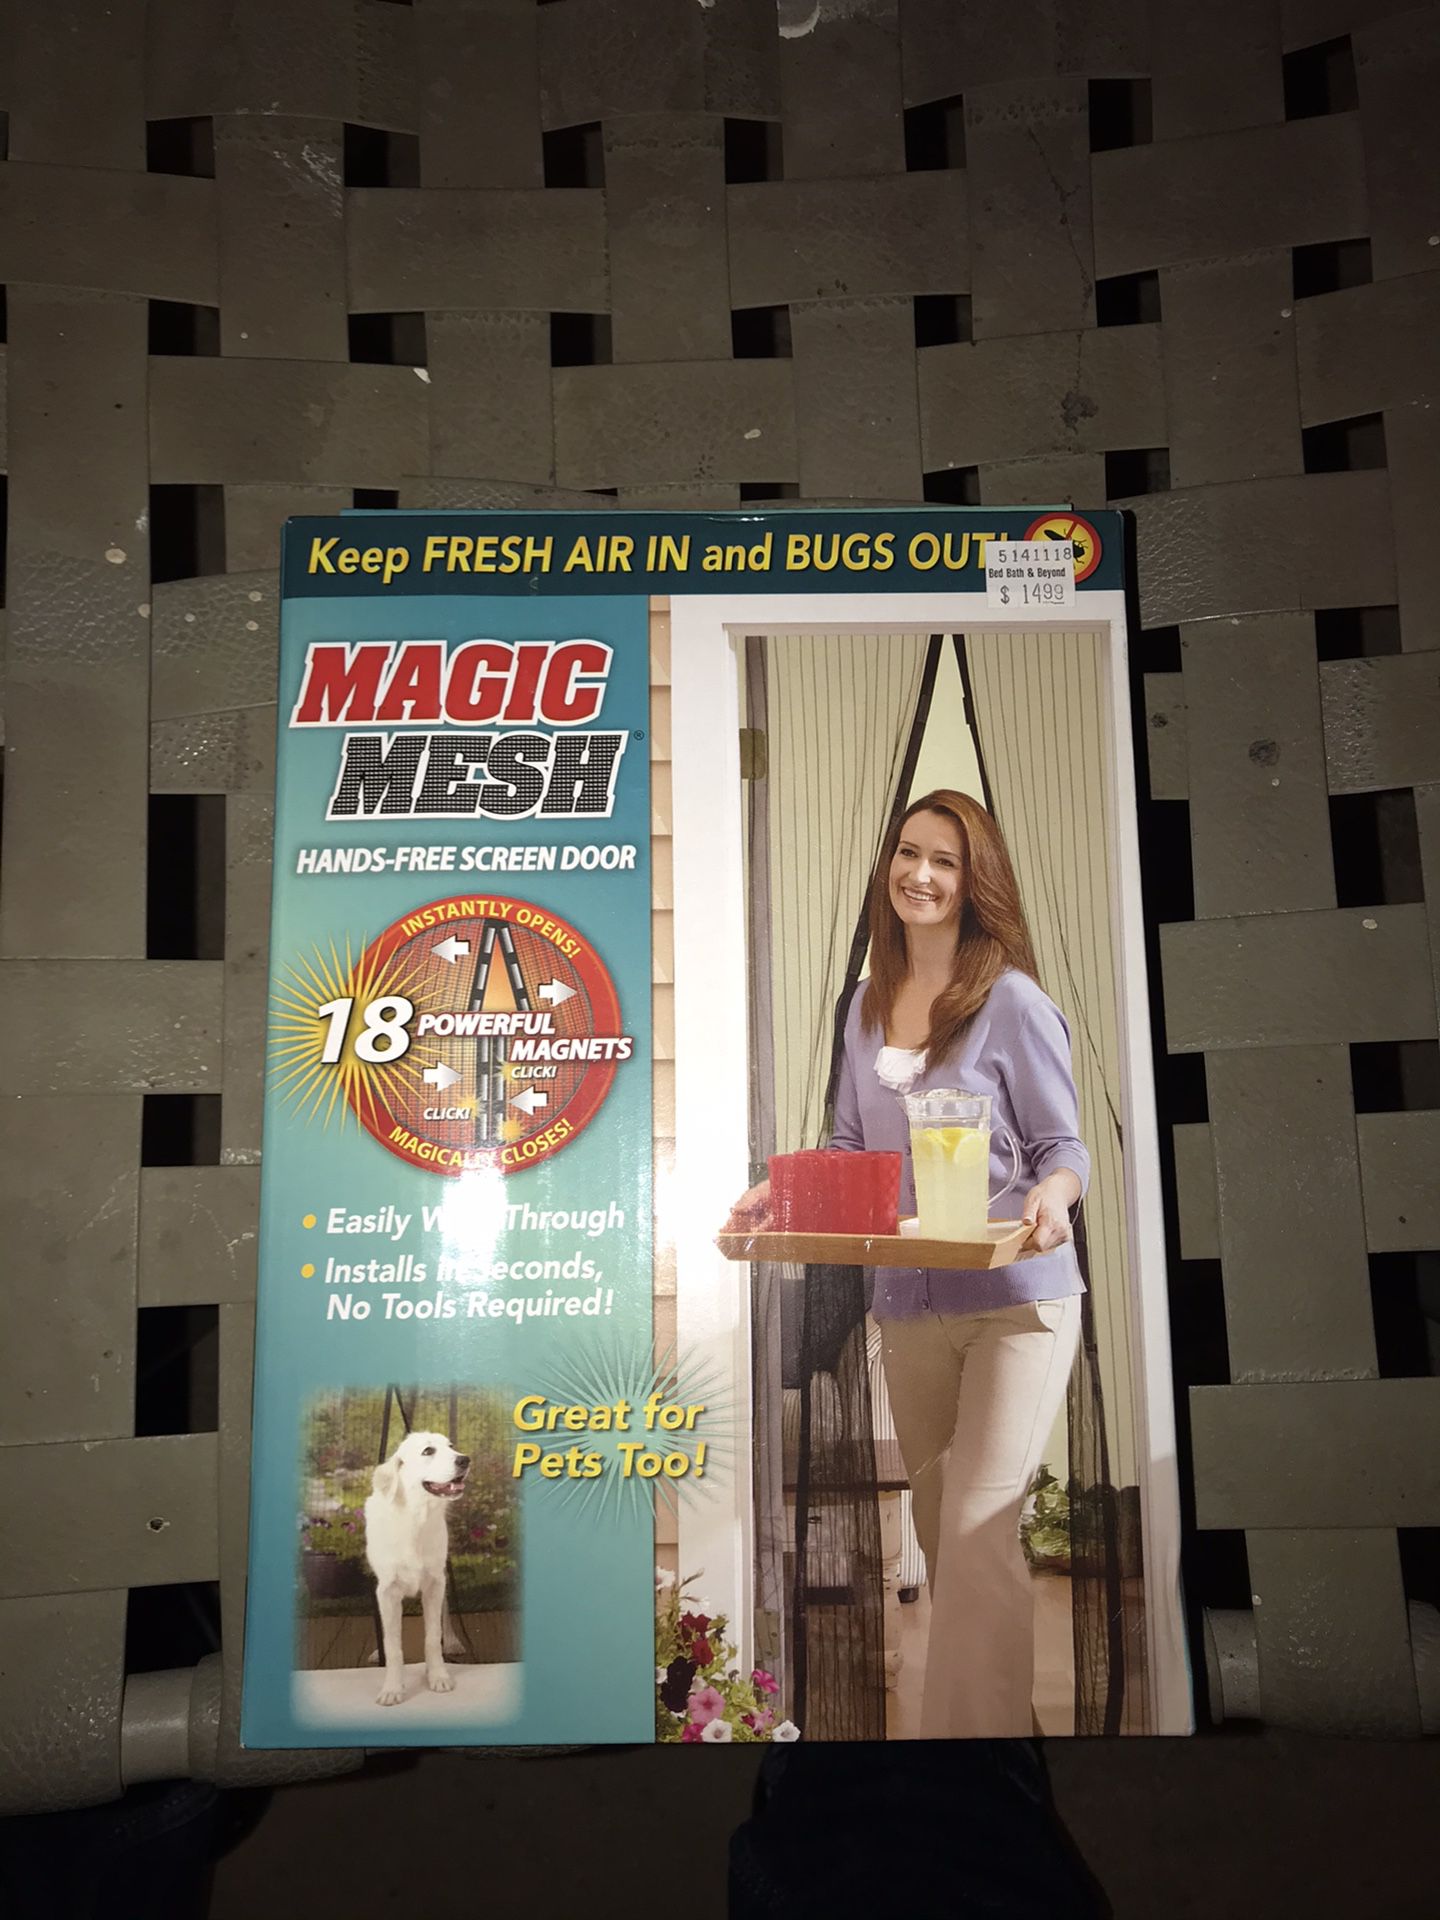 Magic mesh hand free screen door